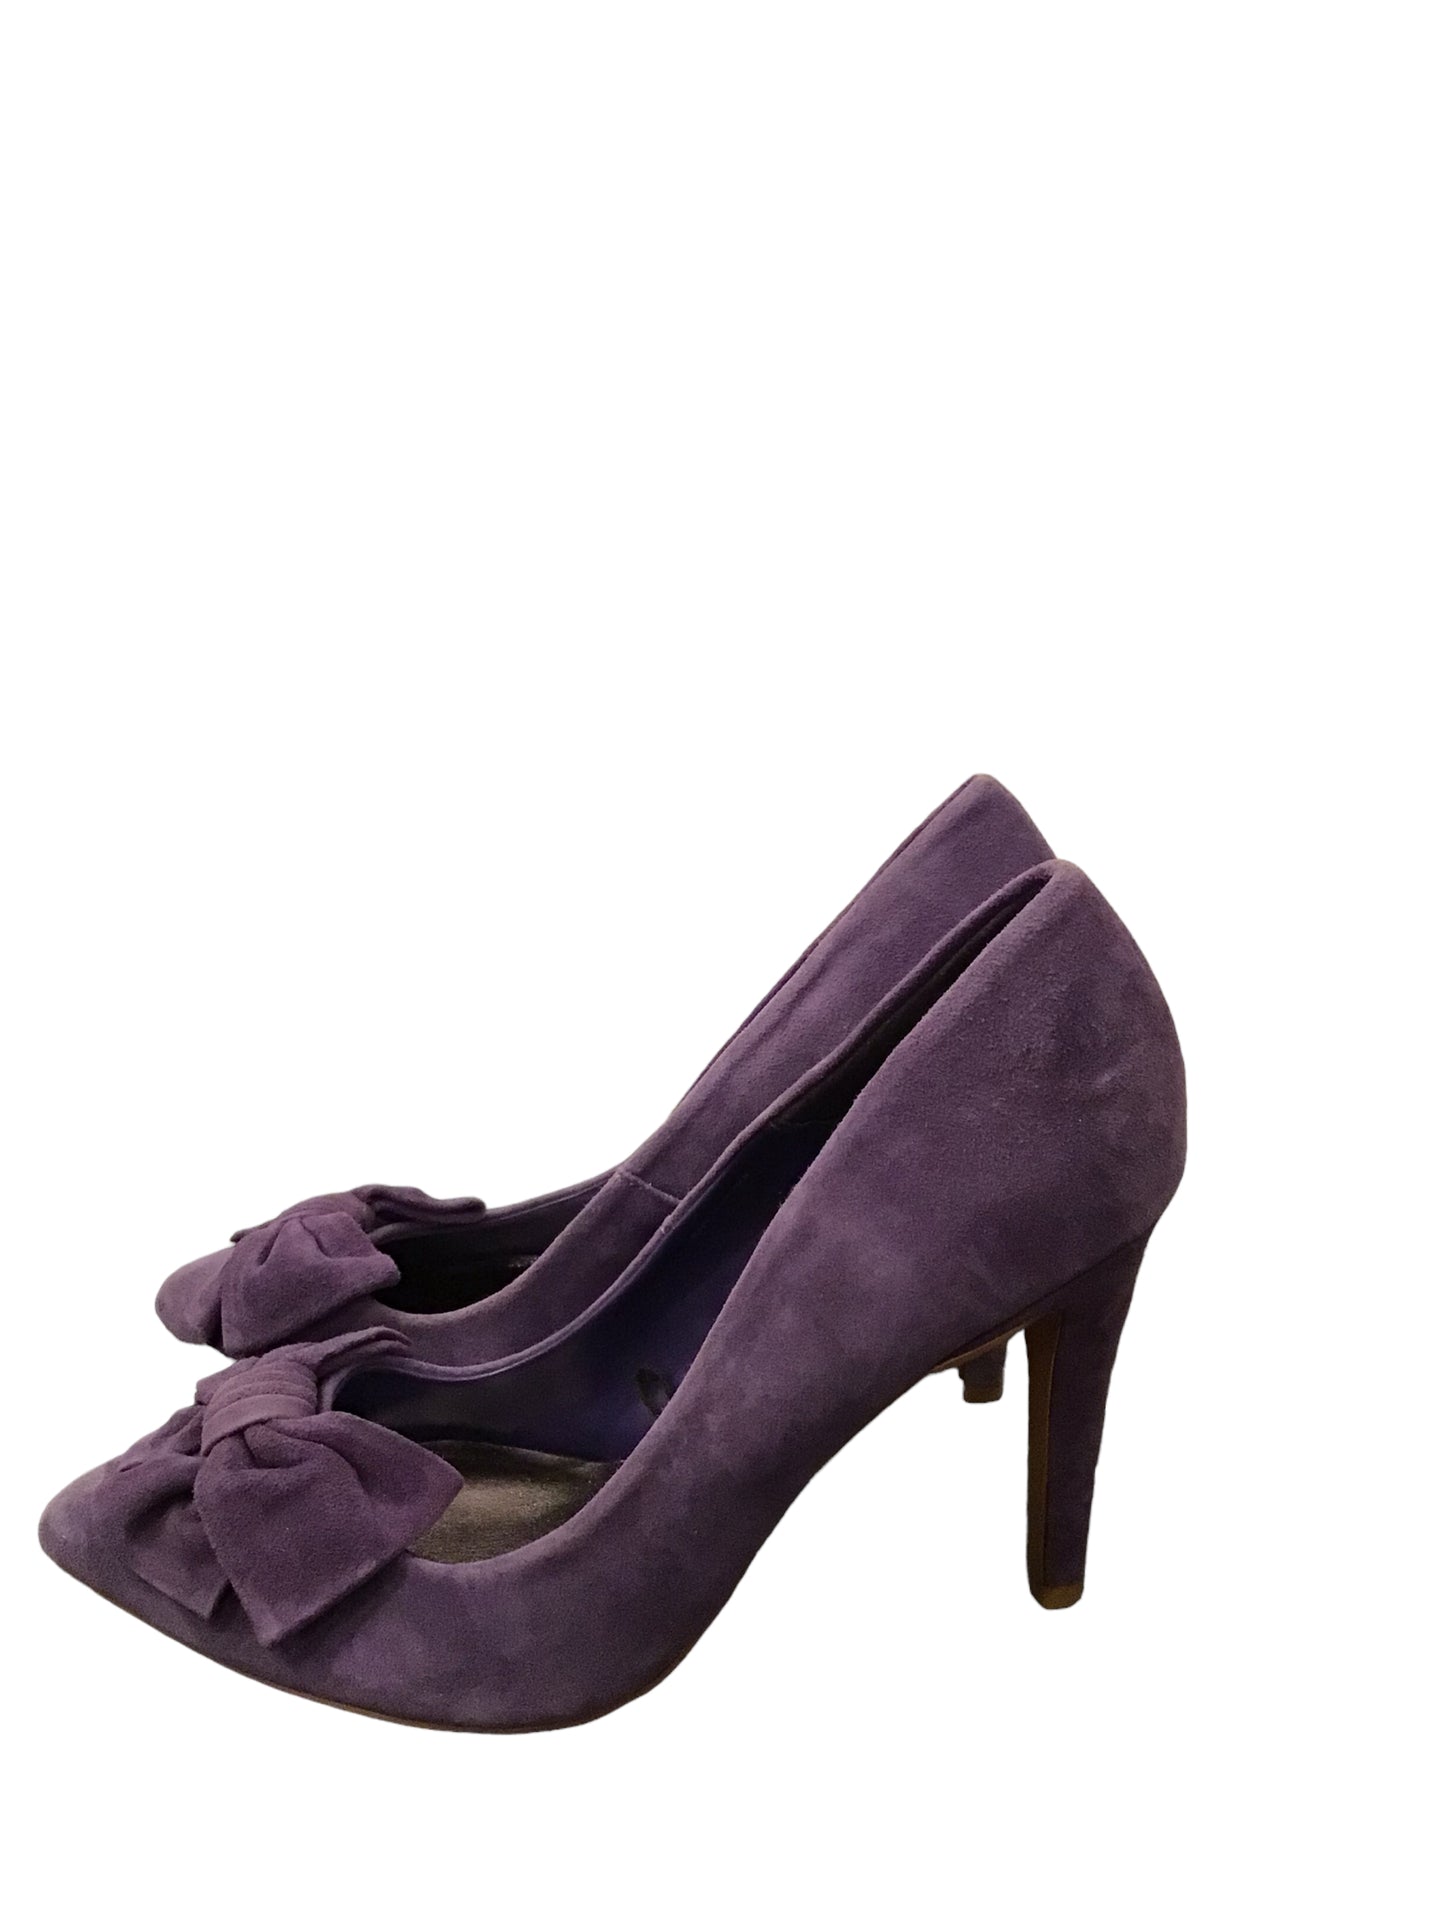 Women’s purple suede shoes by Ben De Lisi for Principles (size 8UK)